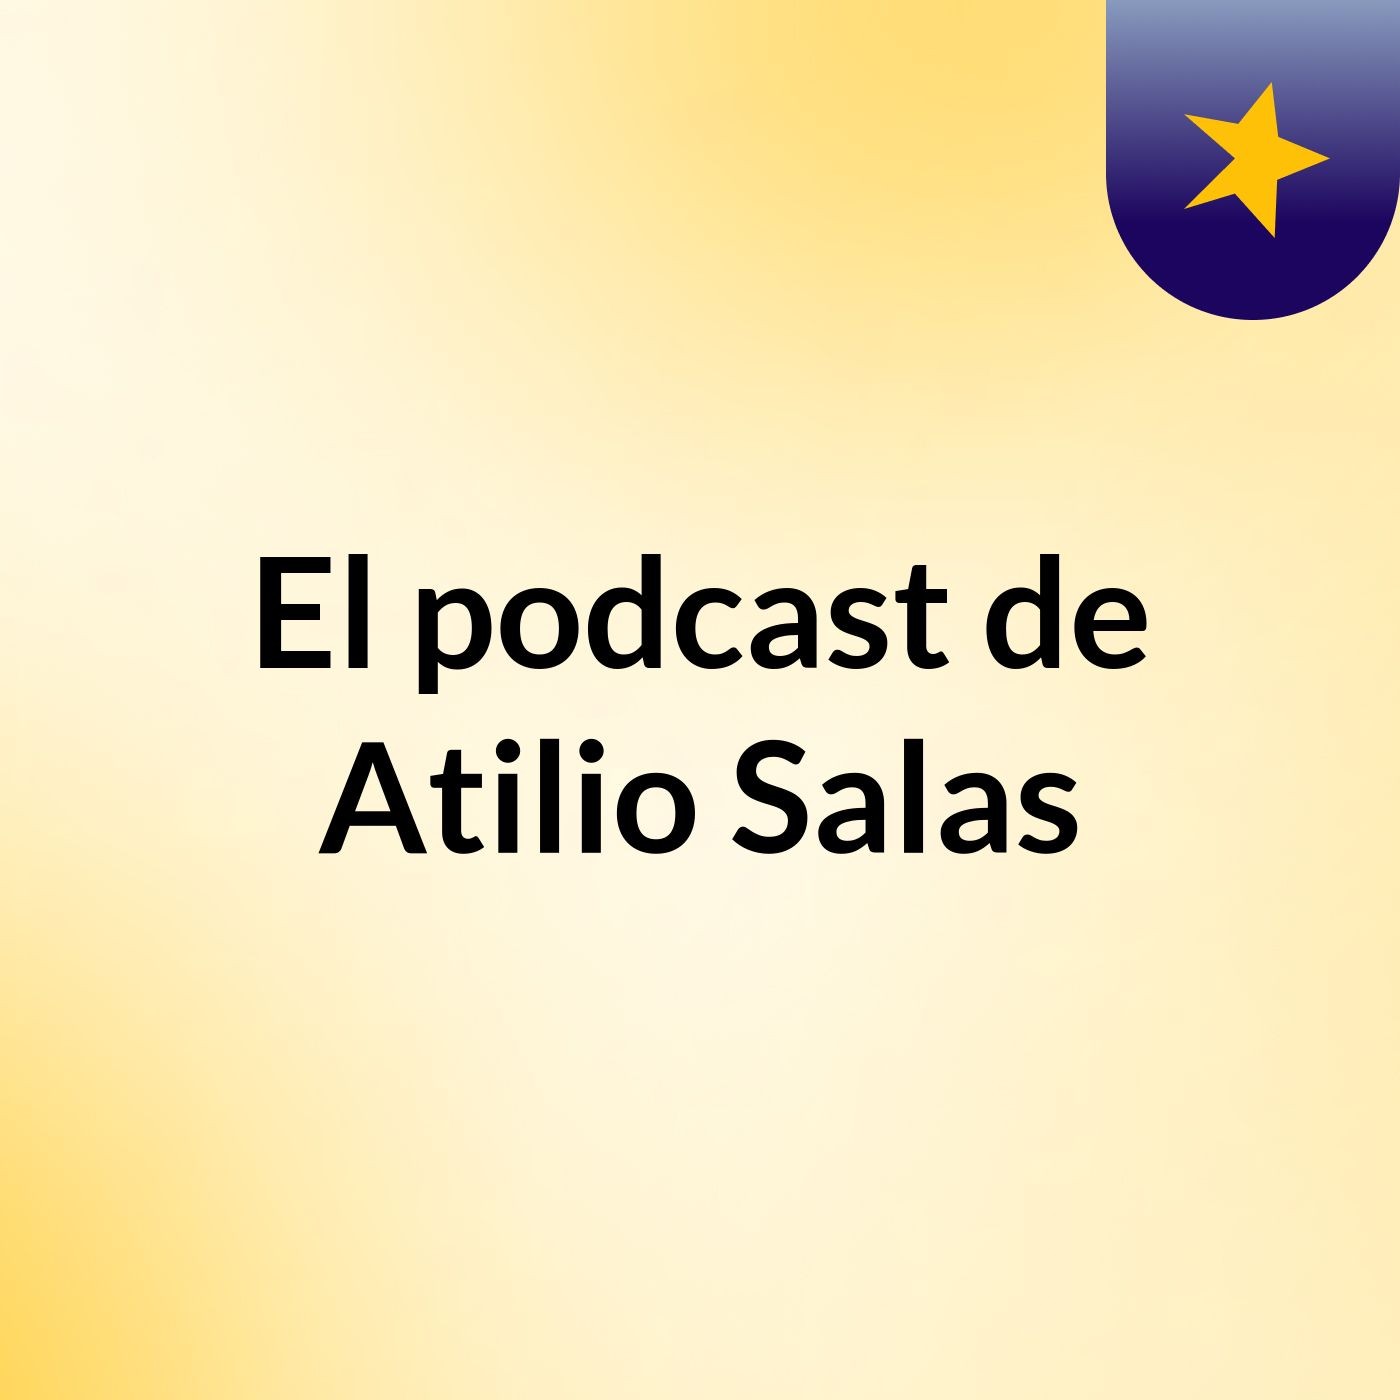 El podcast de Atilio Salas